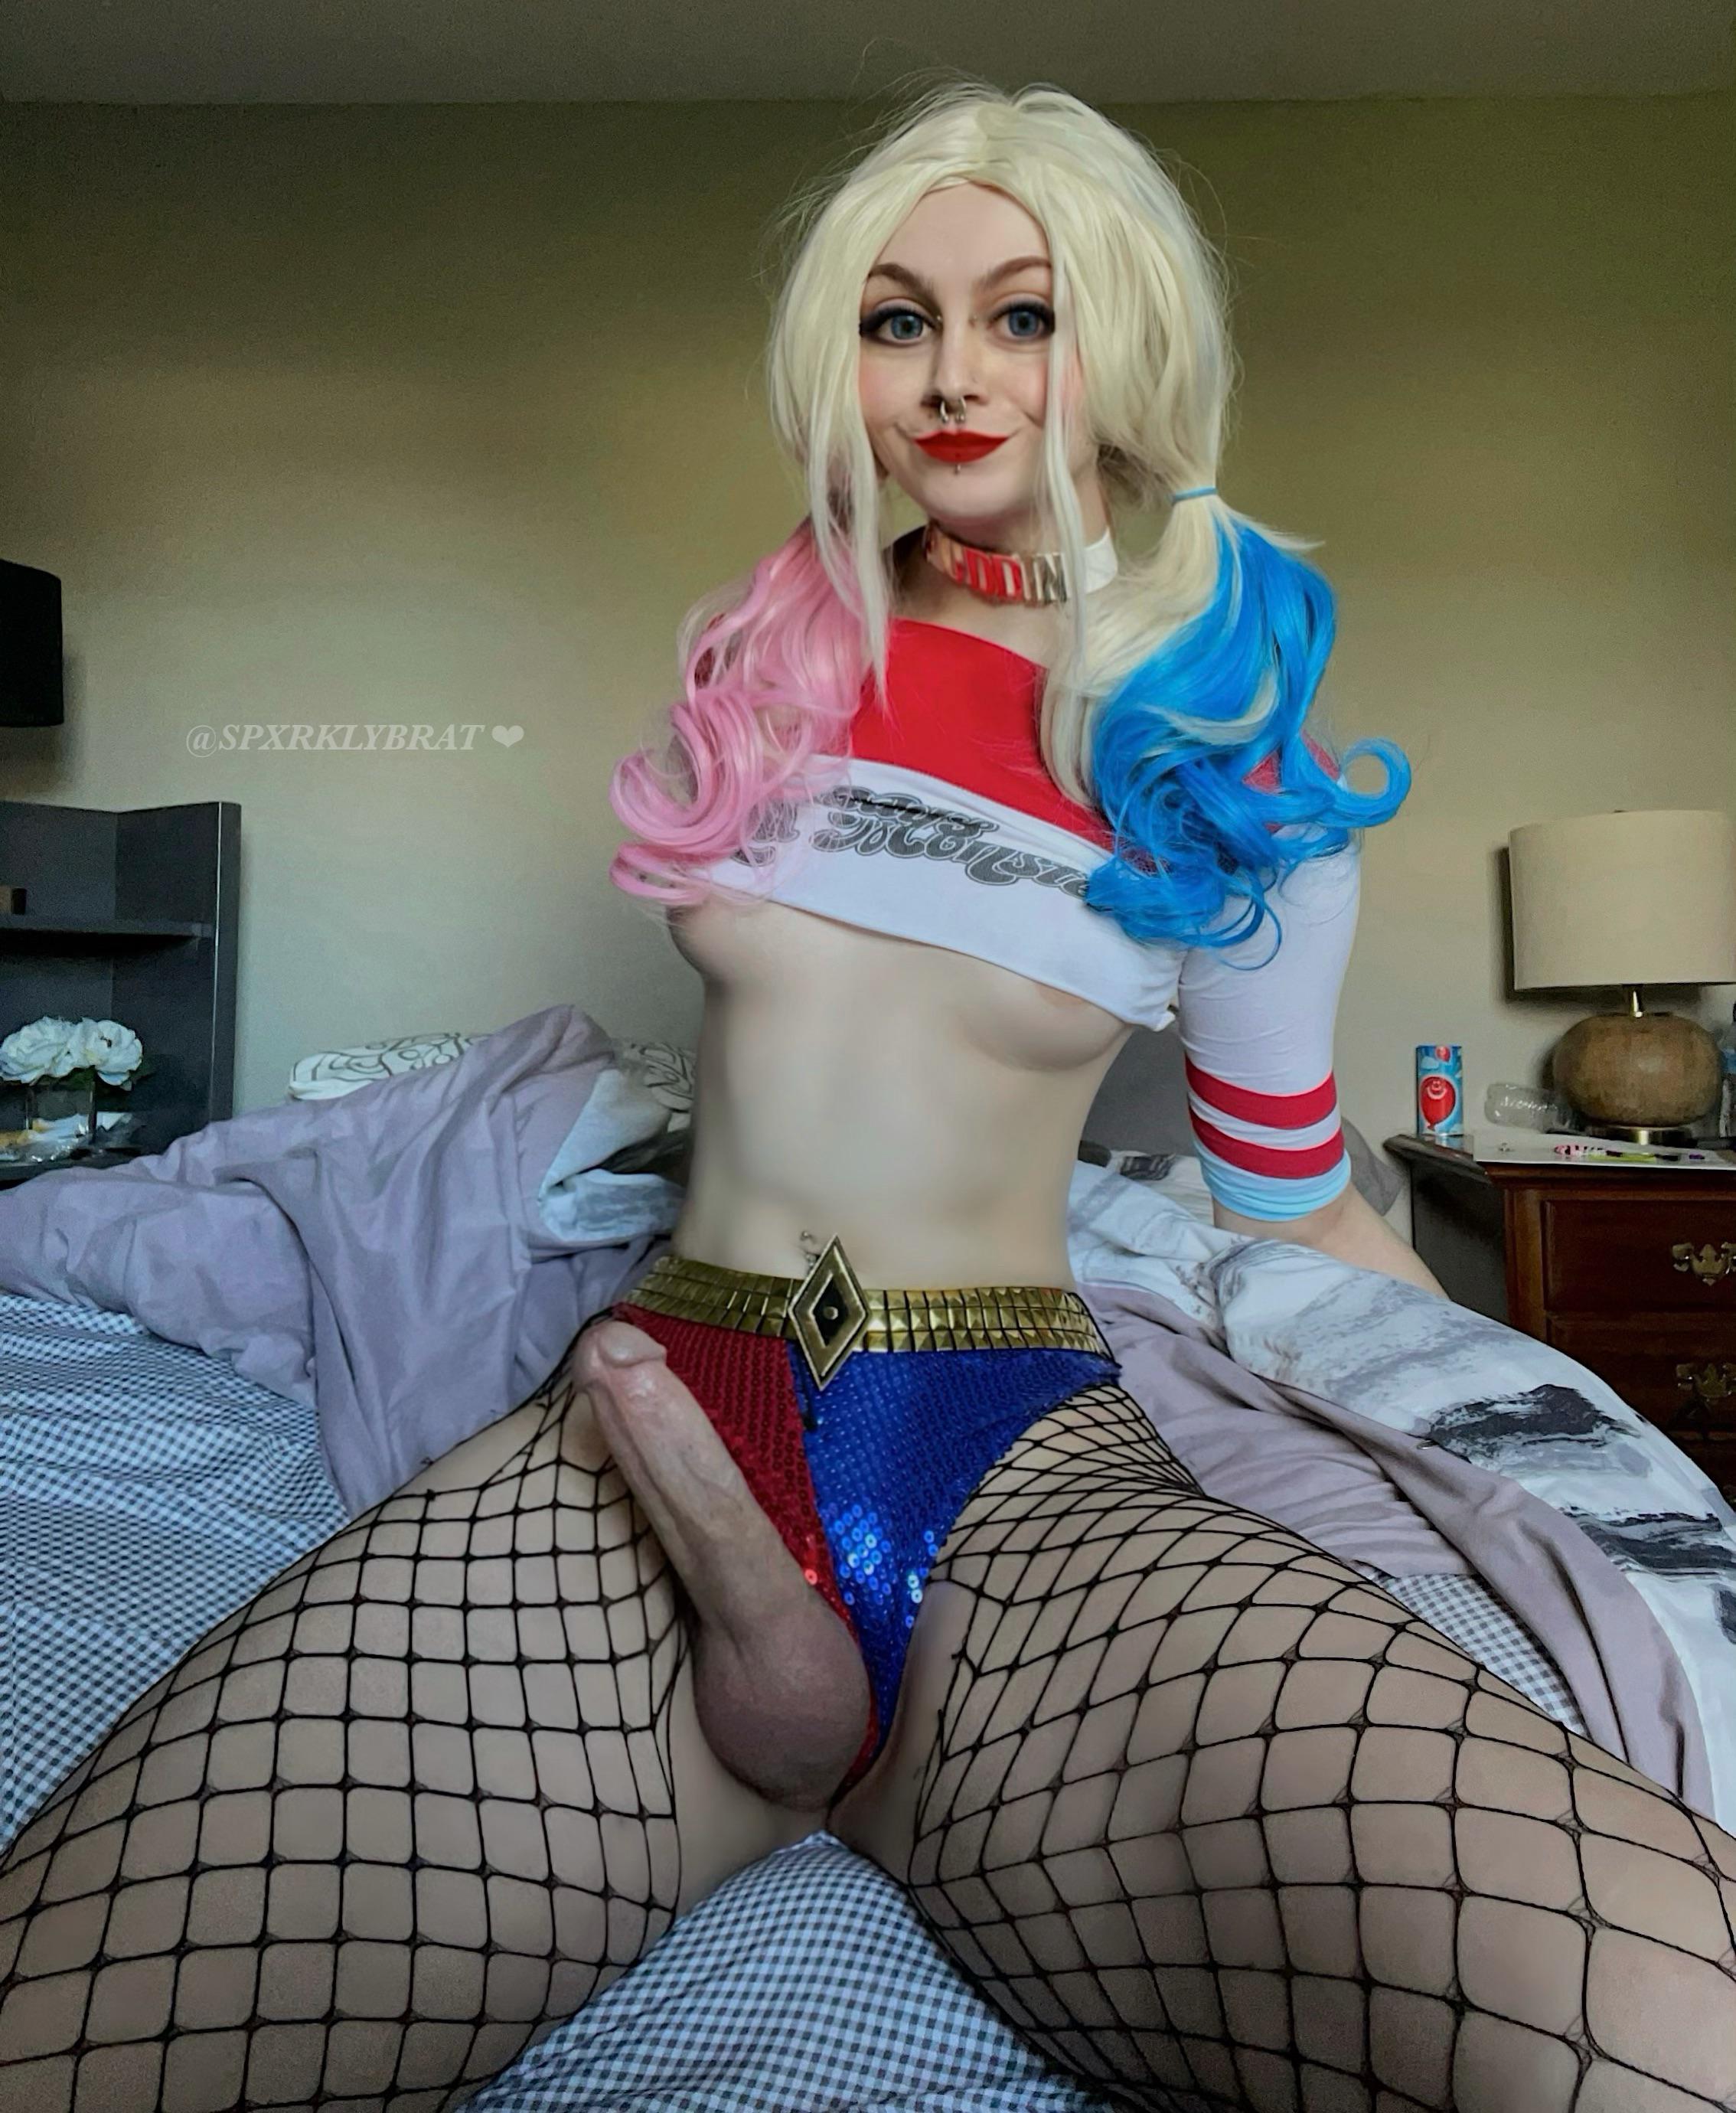 Harley Quinn Porn She Male - Do u like harley quinn's nee bat?